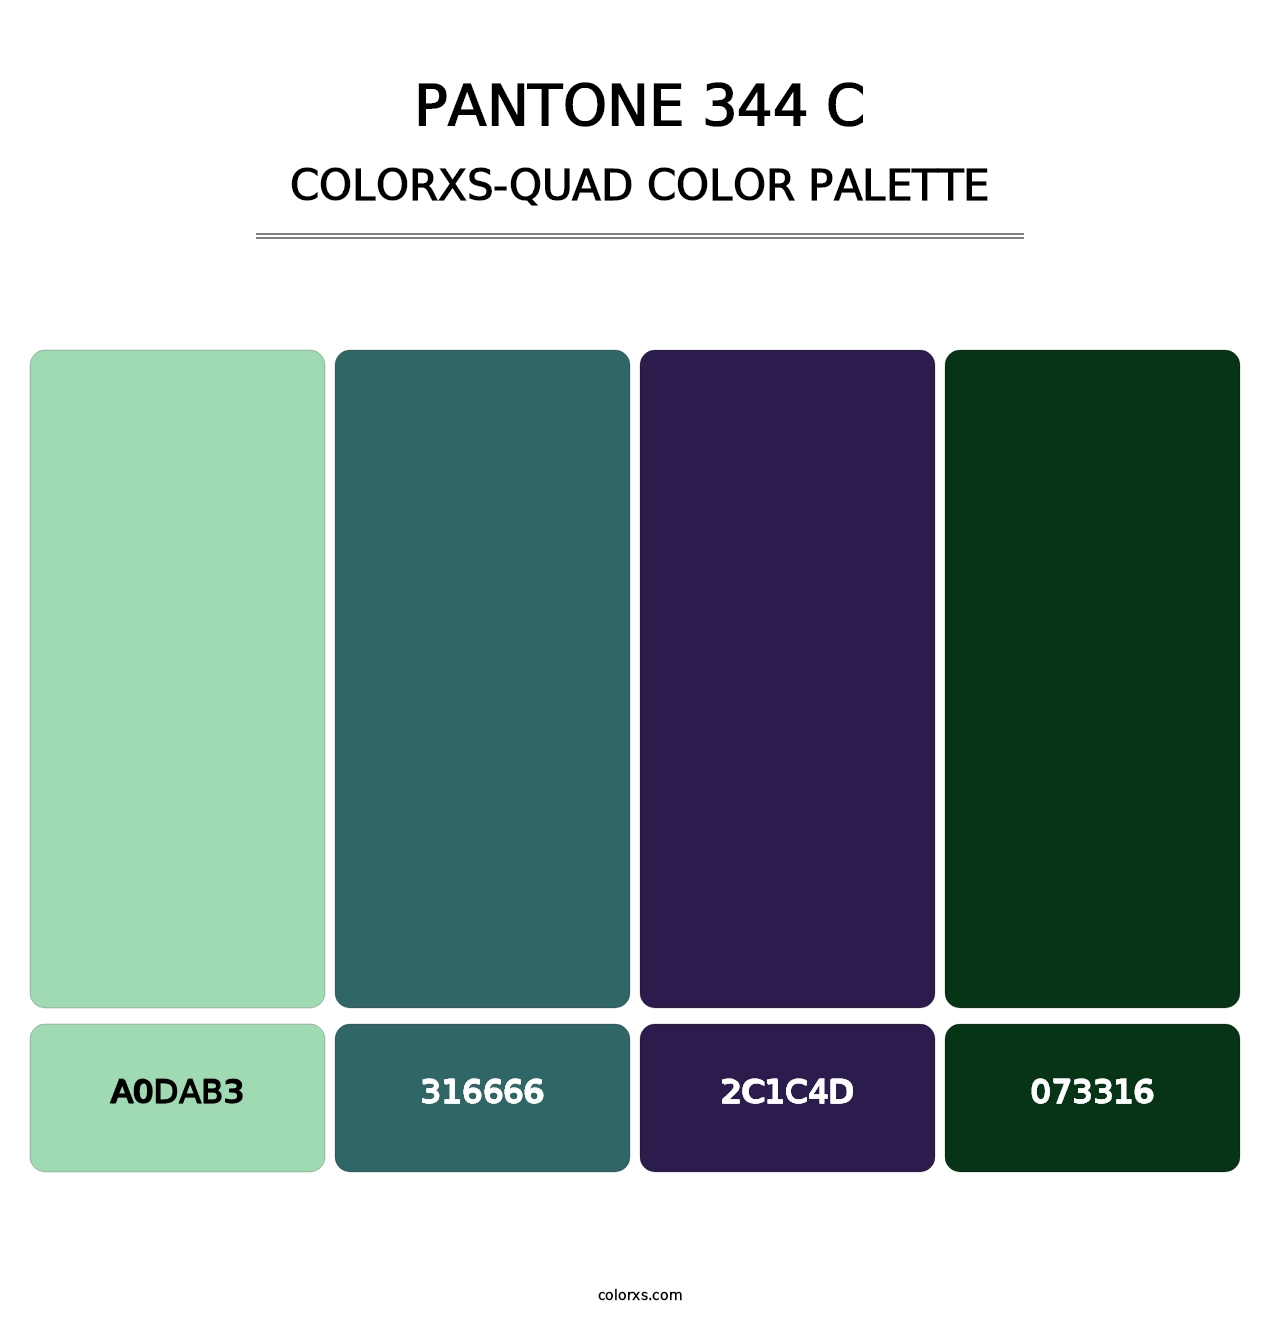 PANTONE 344 C - Colorxs Quad Palette